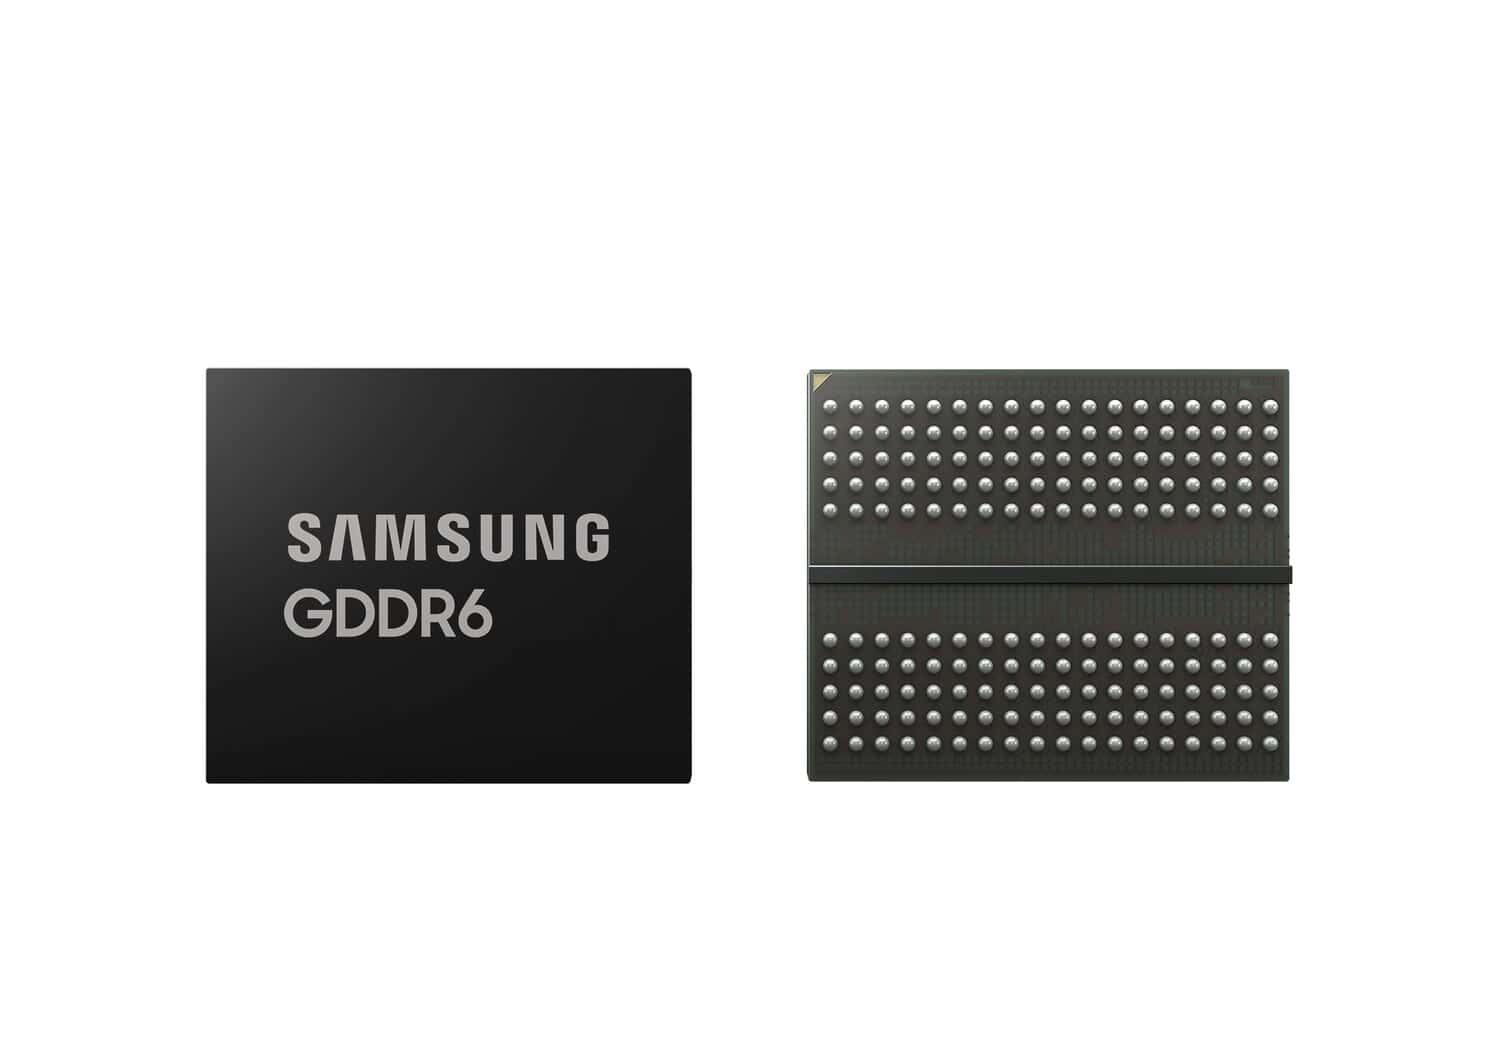 Samsungが世界初の24Gbps GDDR6 DRAMを発表